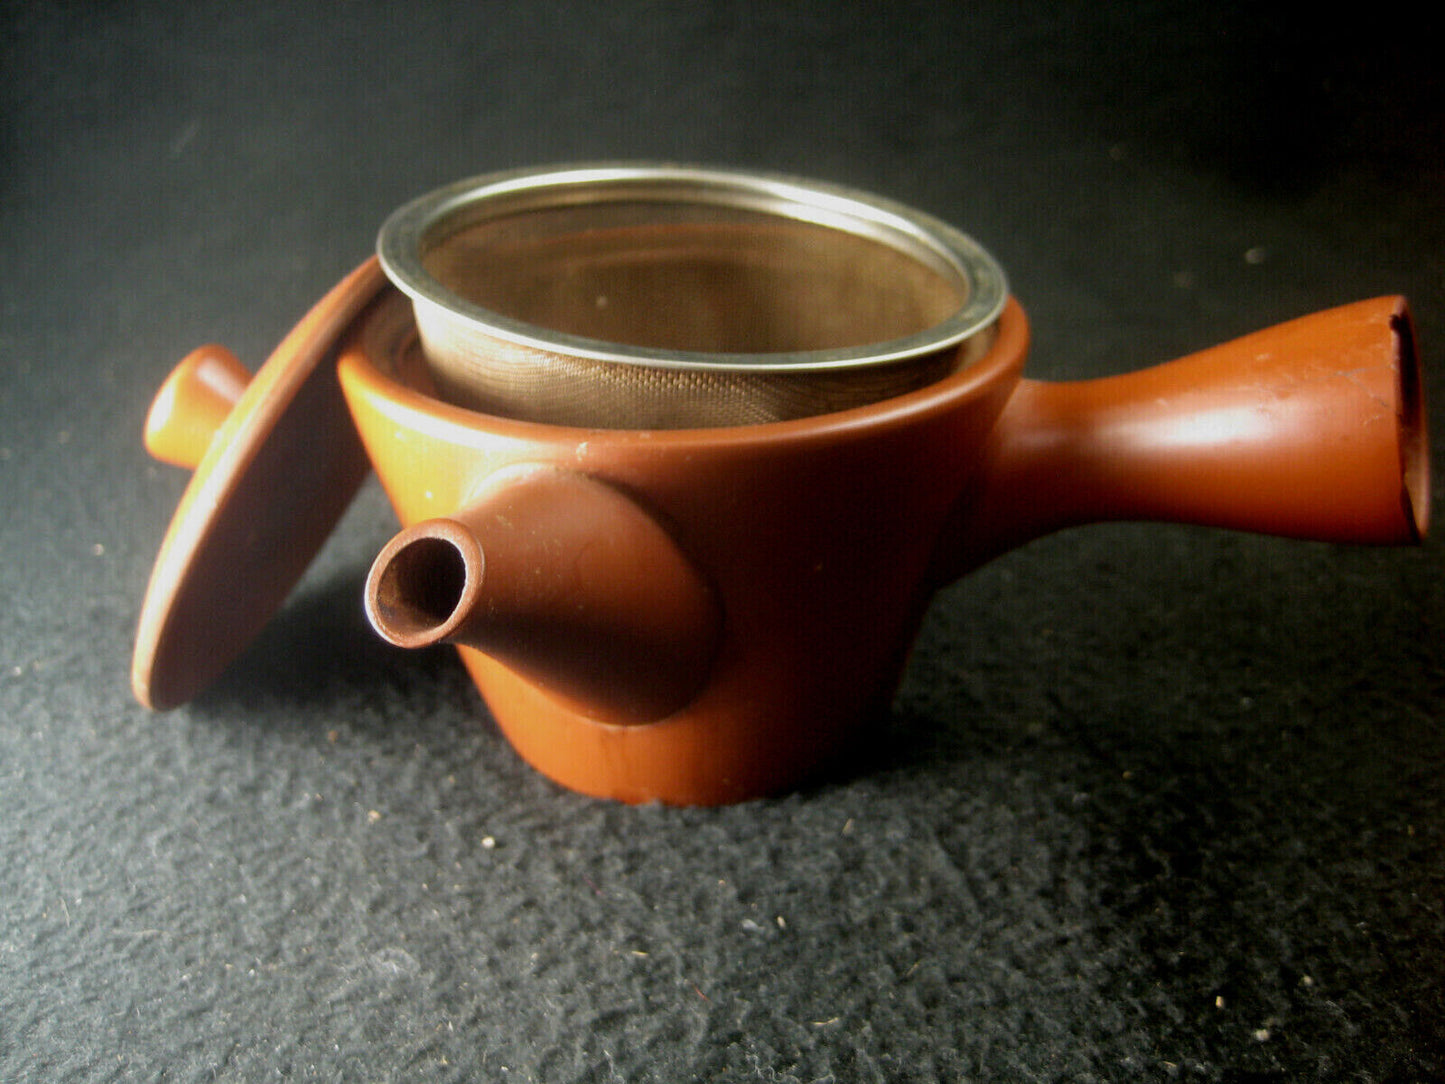 Vintage Signed Kyusu Ceramic Red Clay Tea Pot For Ocha Sencha Genmaicha